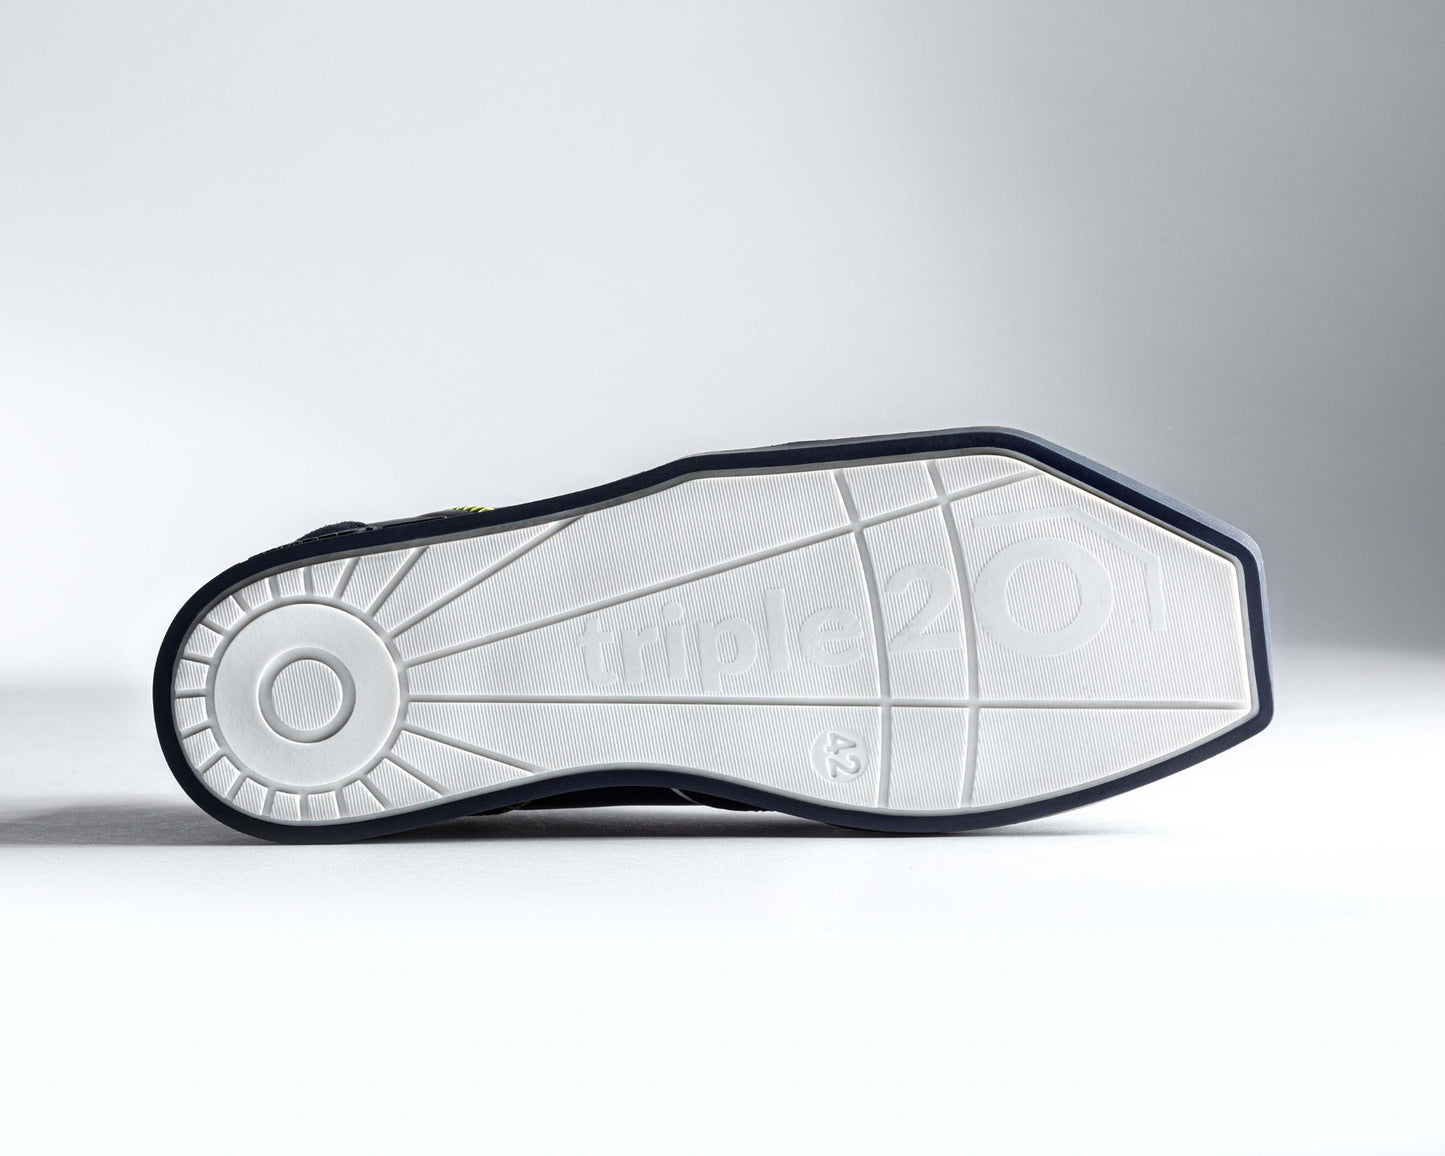 Bild einer weißen triple20 Dartschuh-Laufsohle von unten, also der Lauffläche. Erkennbar ist das spezielle, eckige Sohlendesign sowie das besonders schön gemachte Dessin der Profilierung.